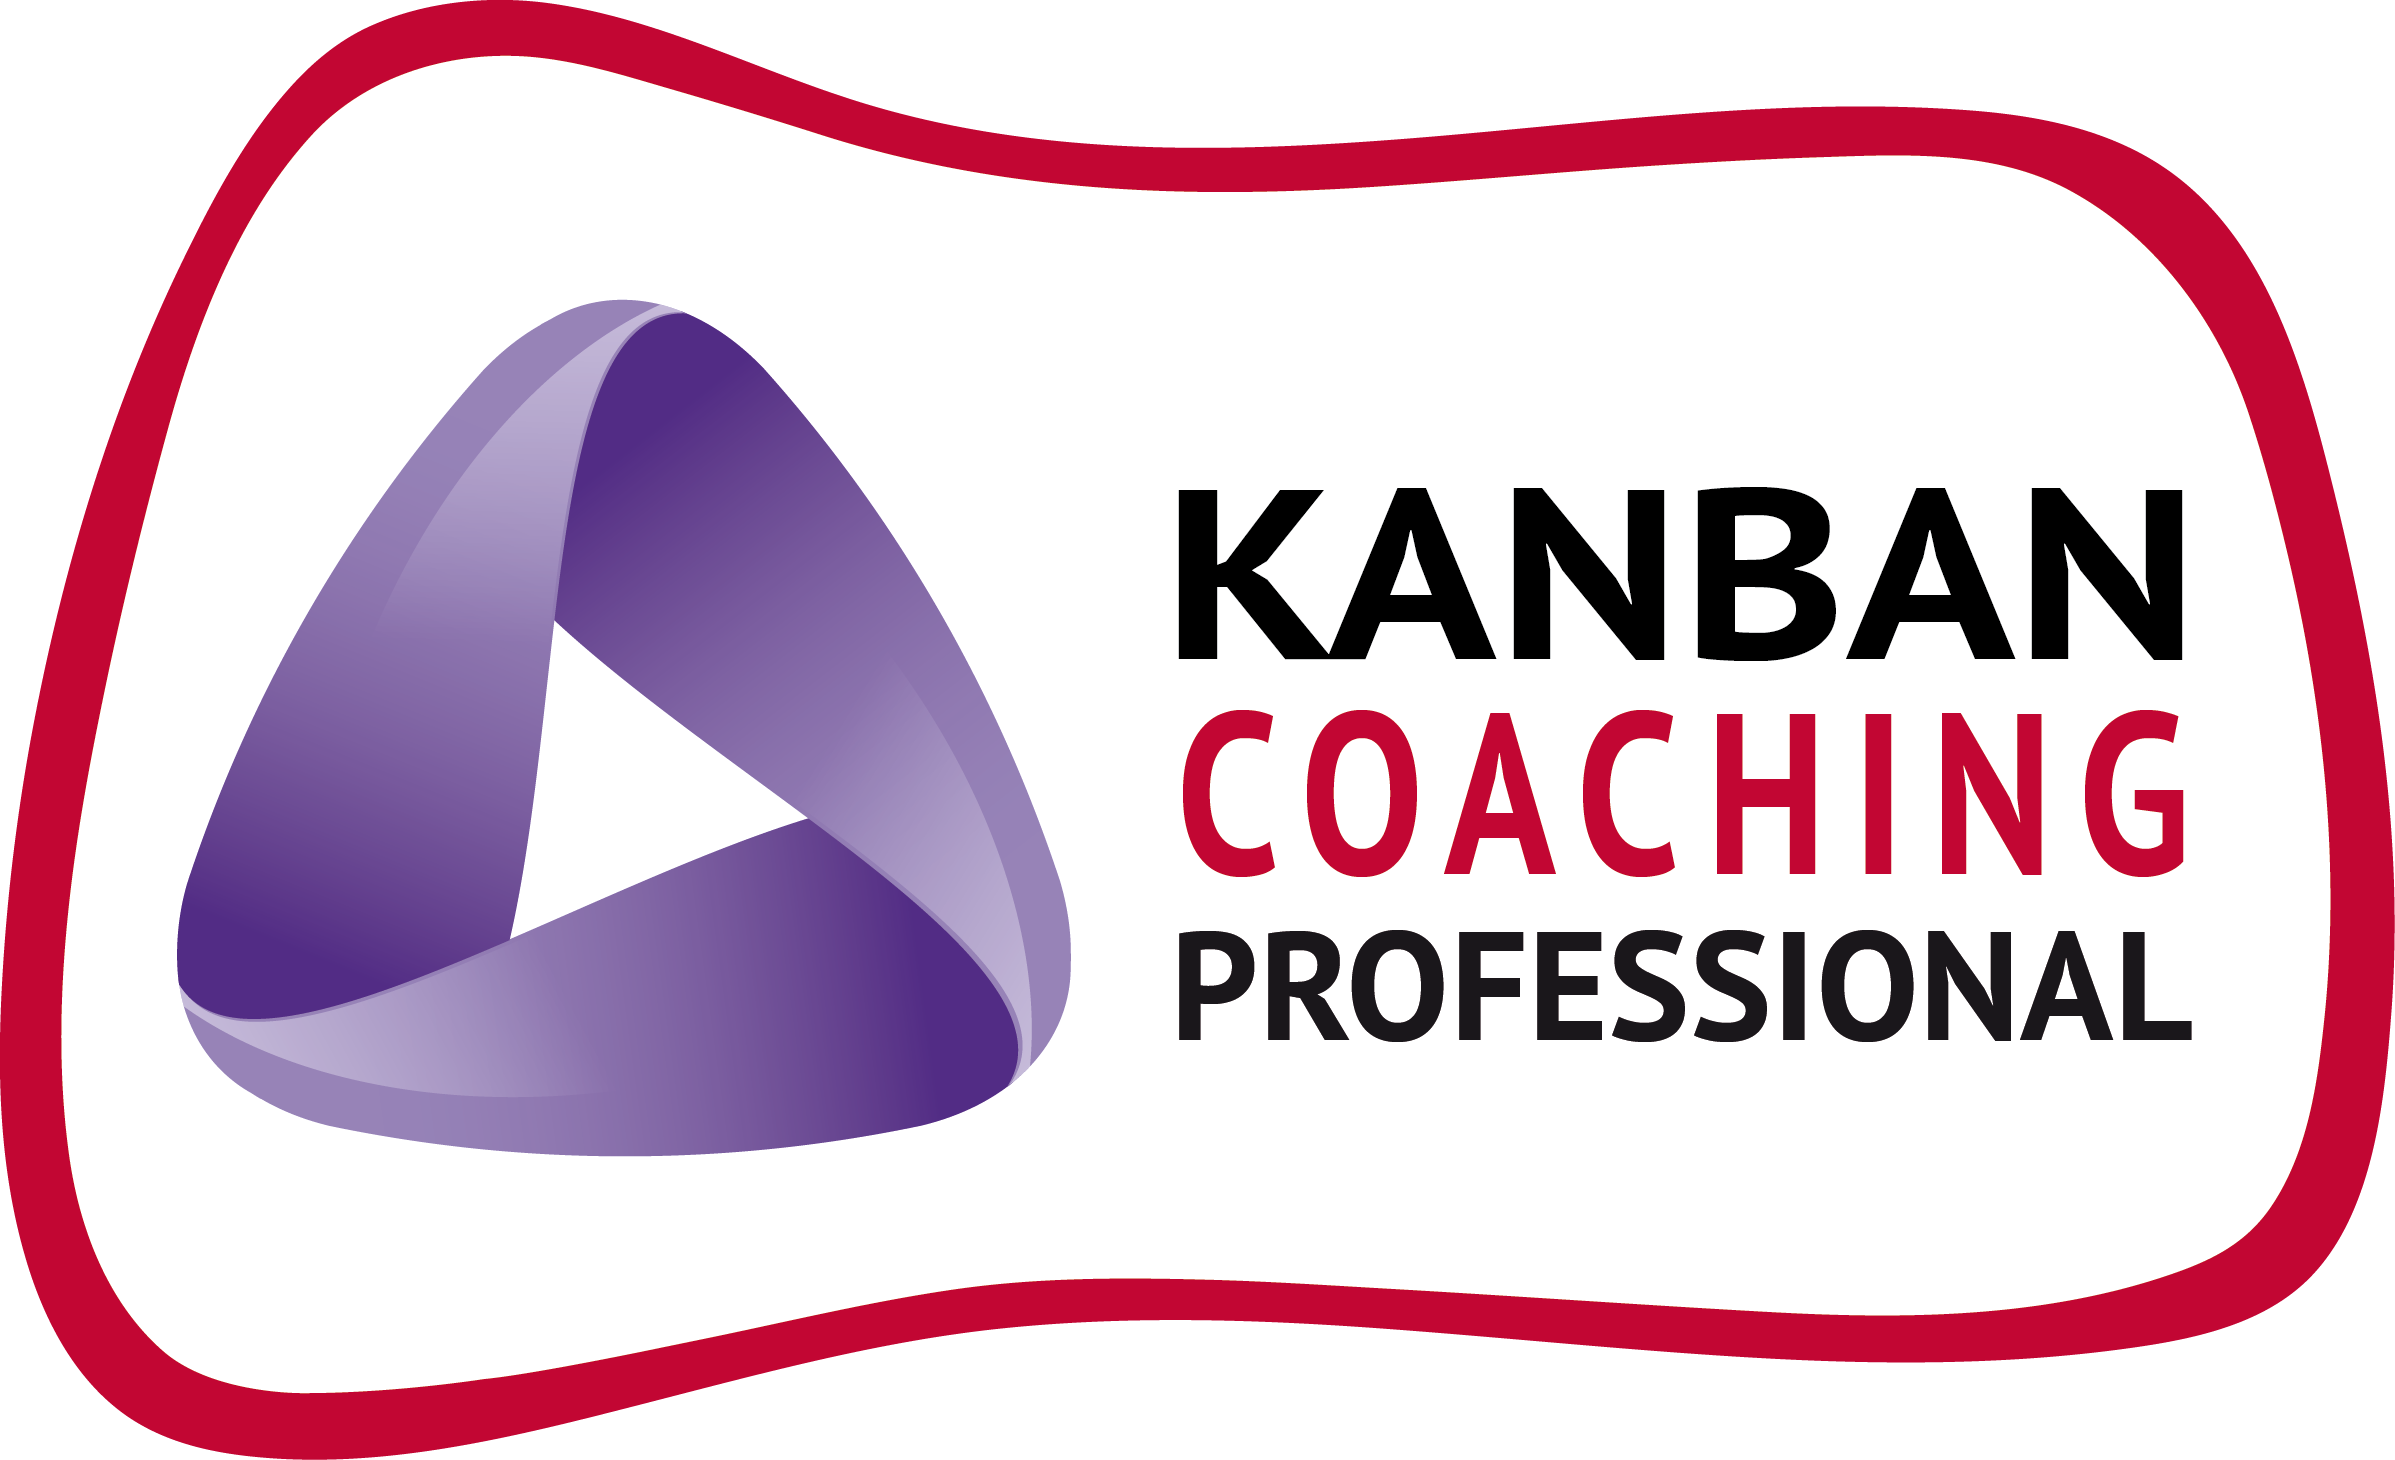 Kanban Coaching Professional Badge